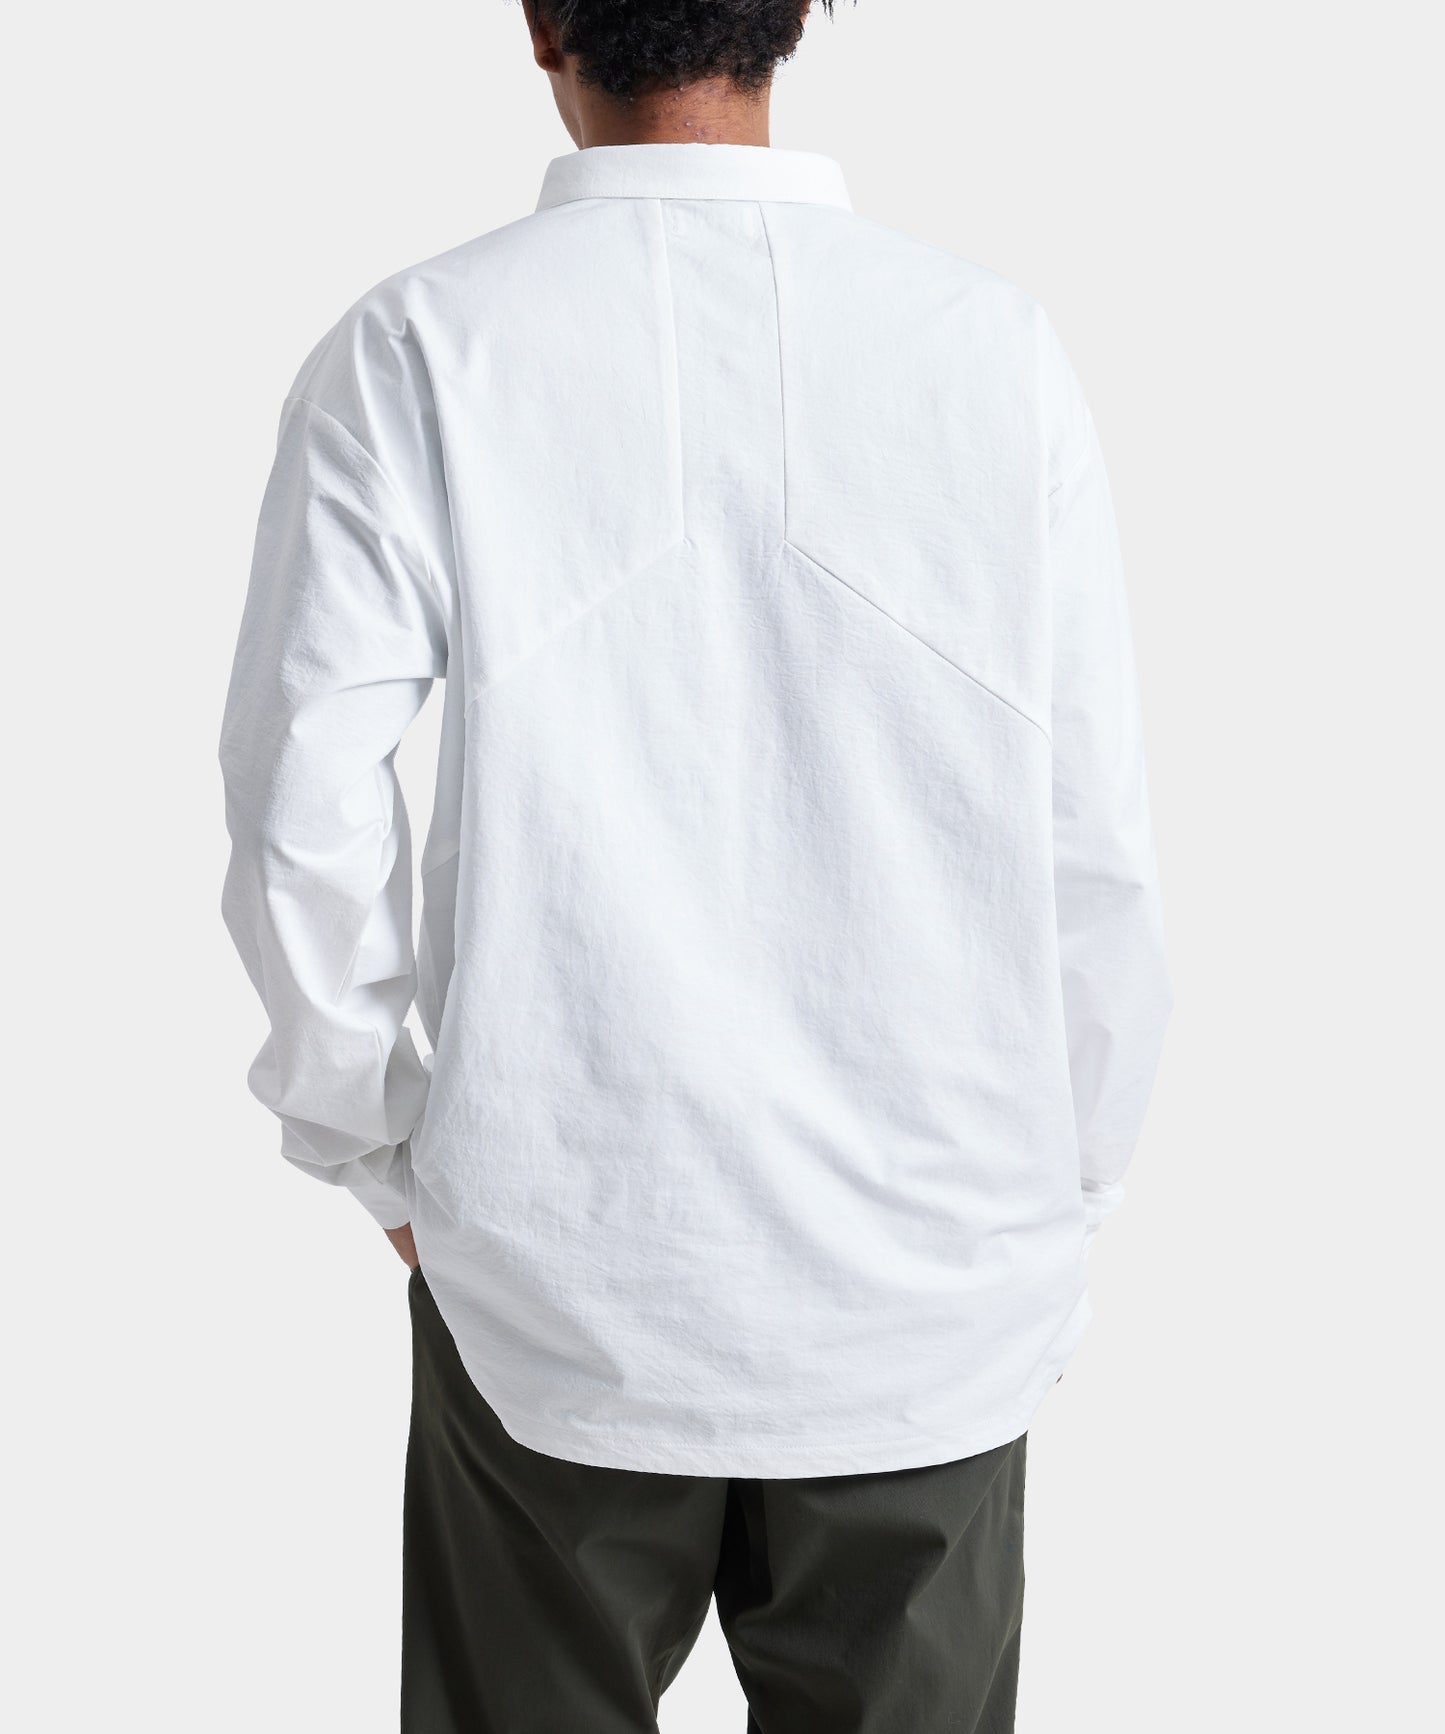 LOGO motif Pull Over Shirt WHITE